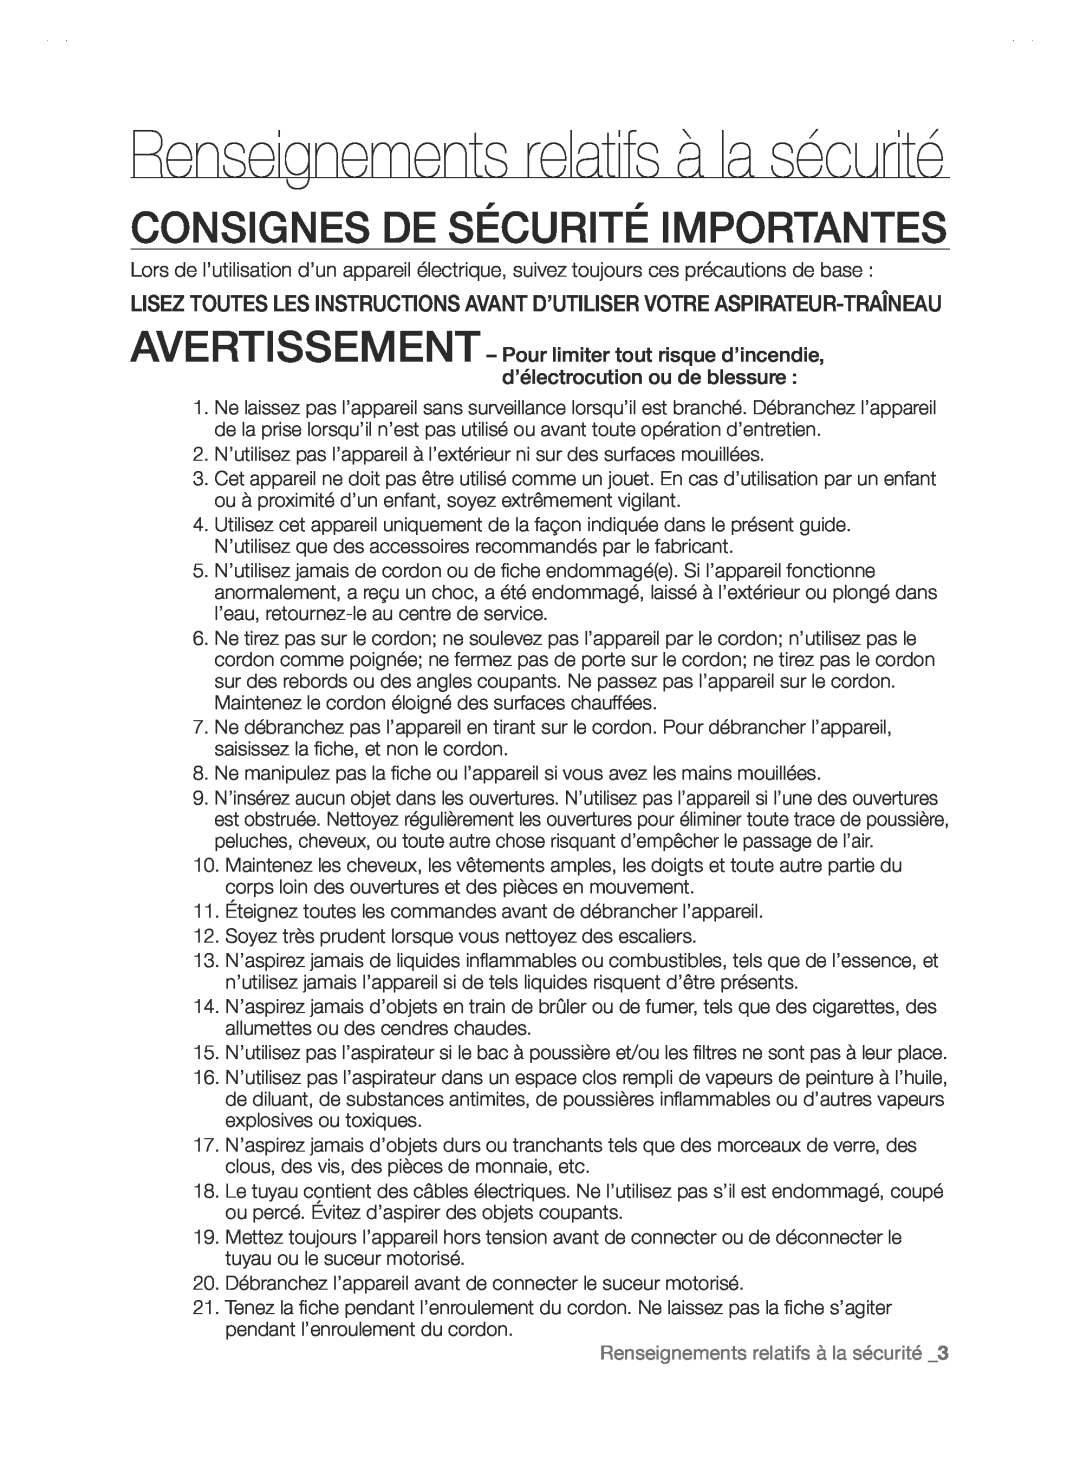 Samsung SC88P user manual Consignes De Sécurité Importantes, Renseignements relatifs à la sécurité _3 